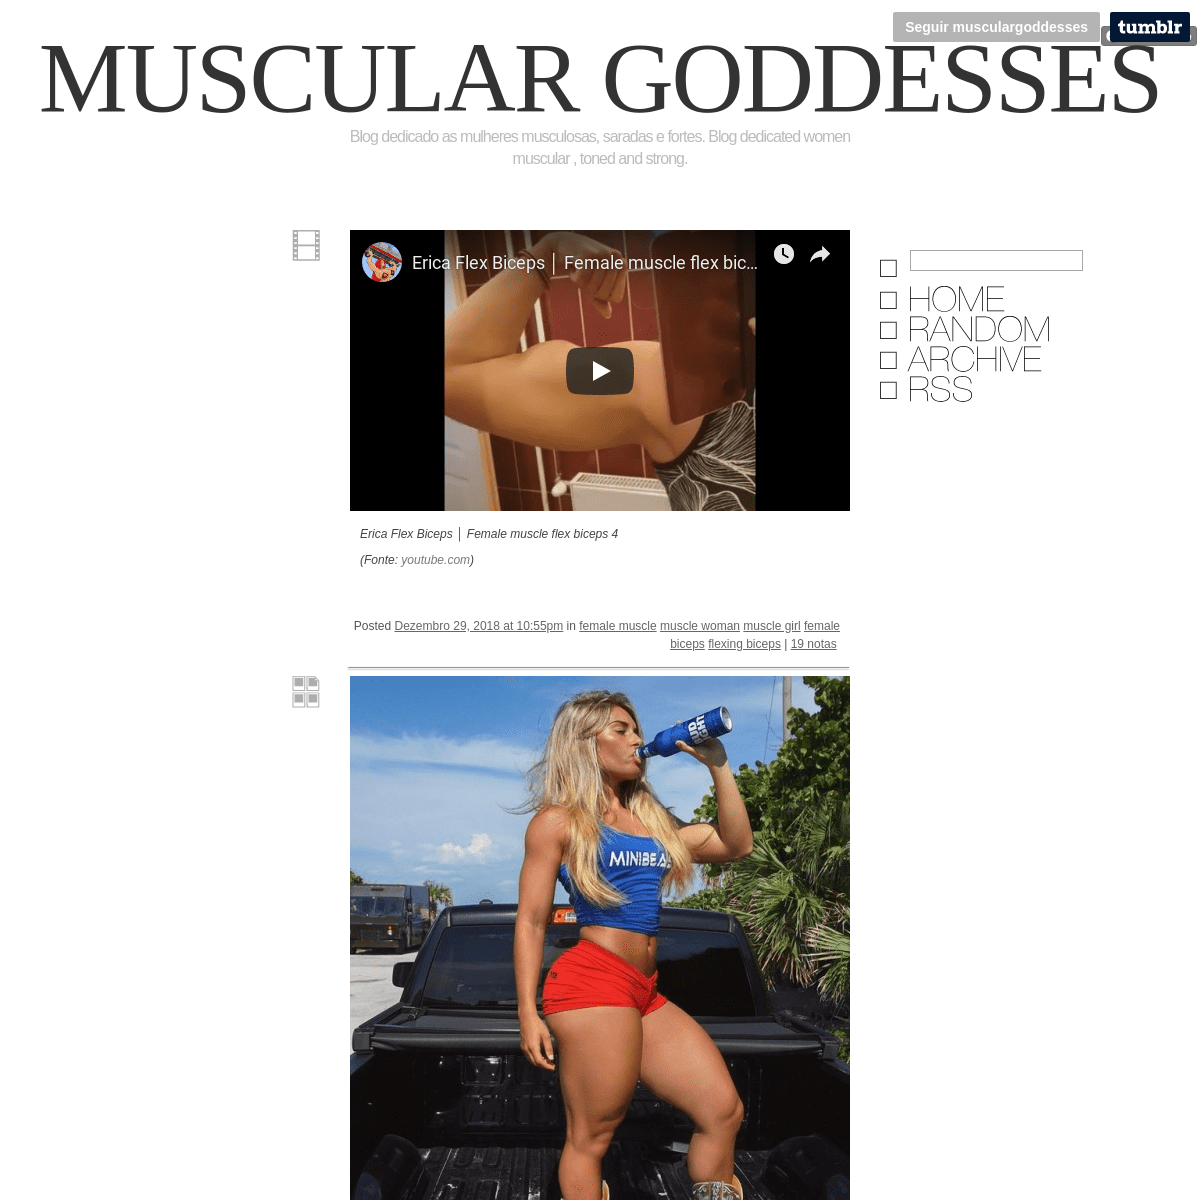 Muscular Goddesses